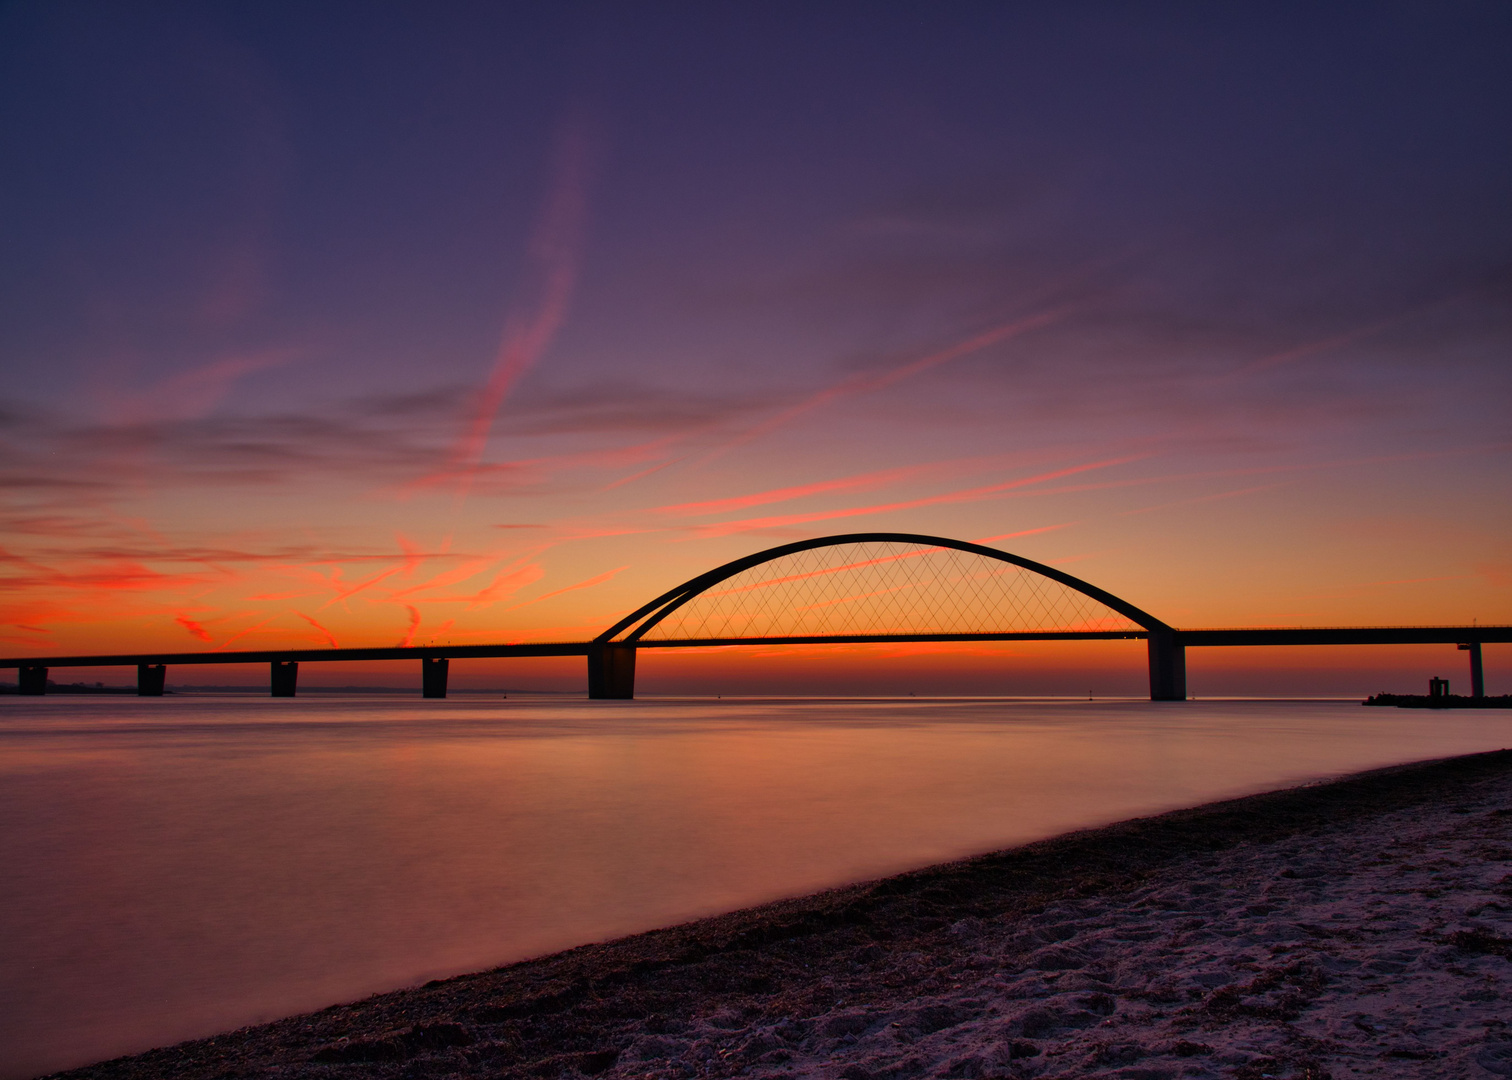 Fehmarnsundbrücke im Sonnenuntergang